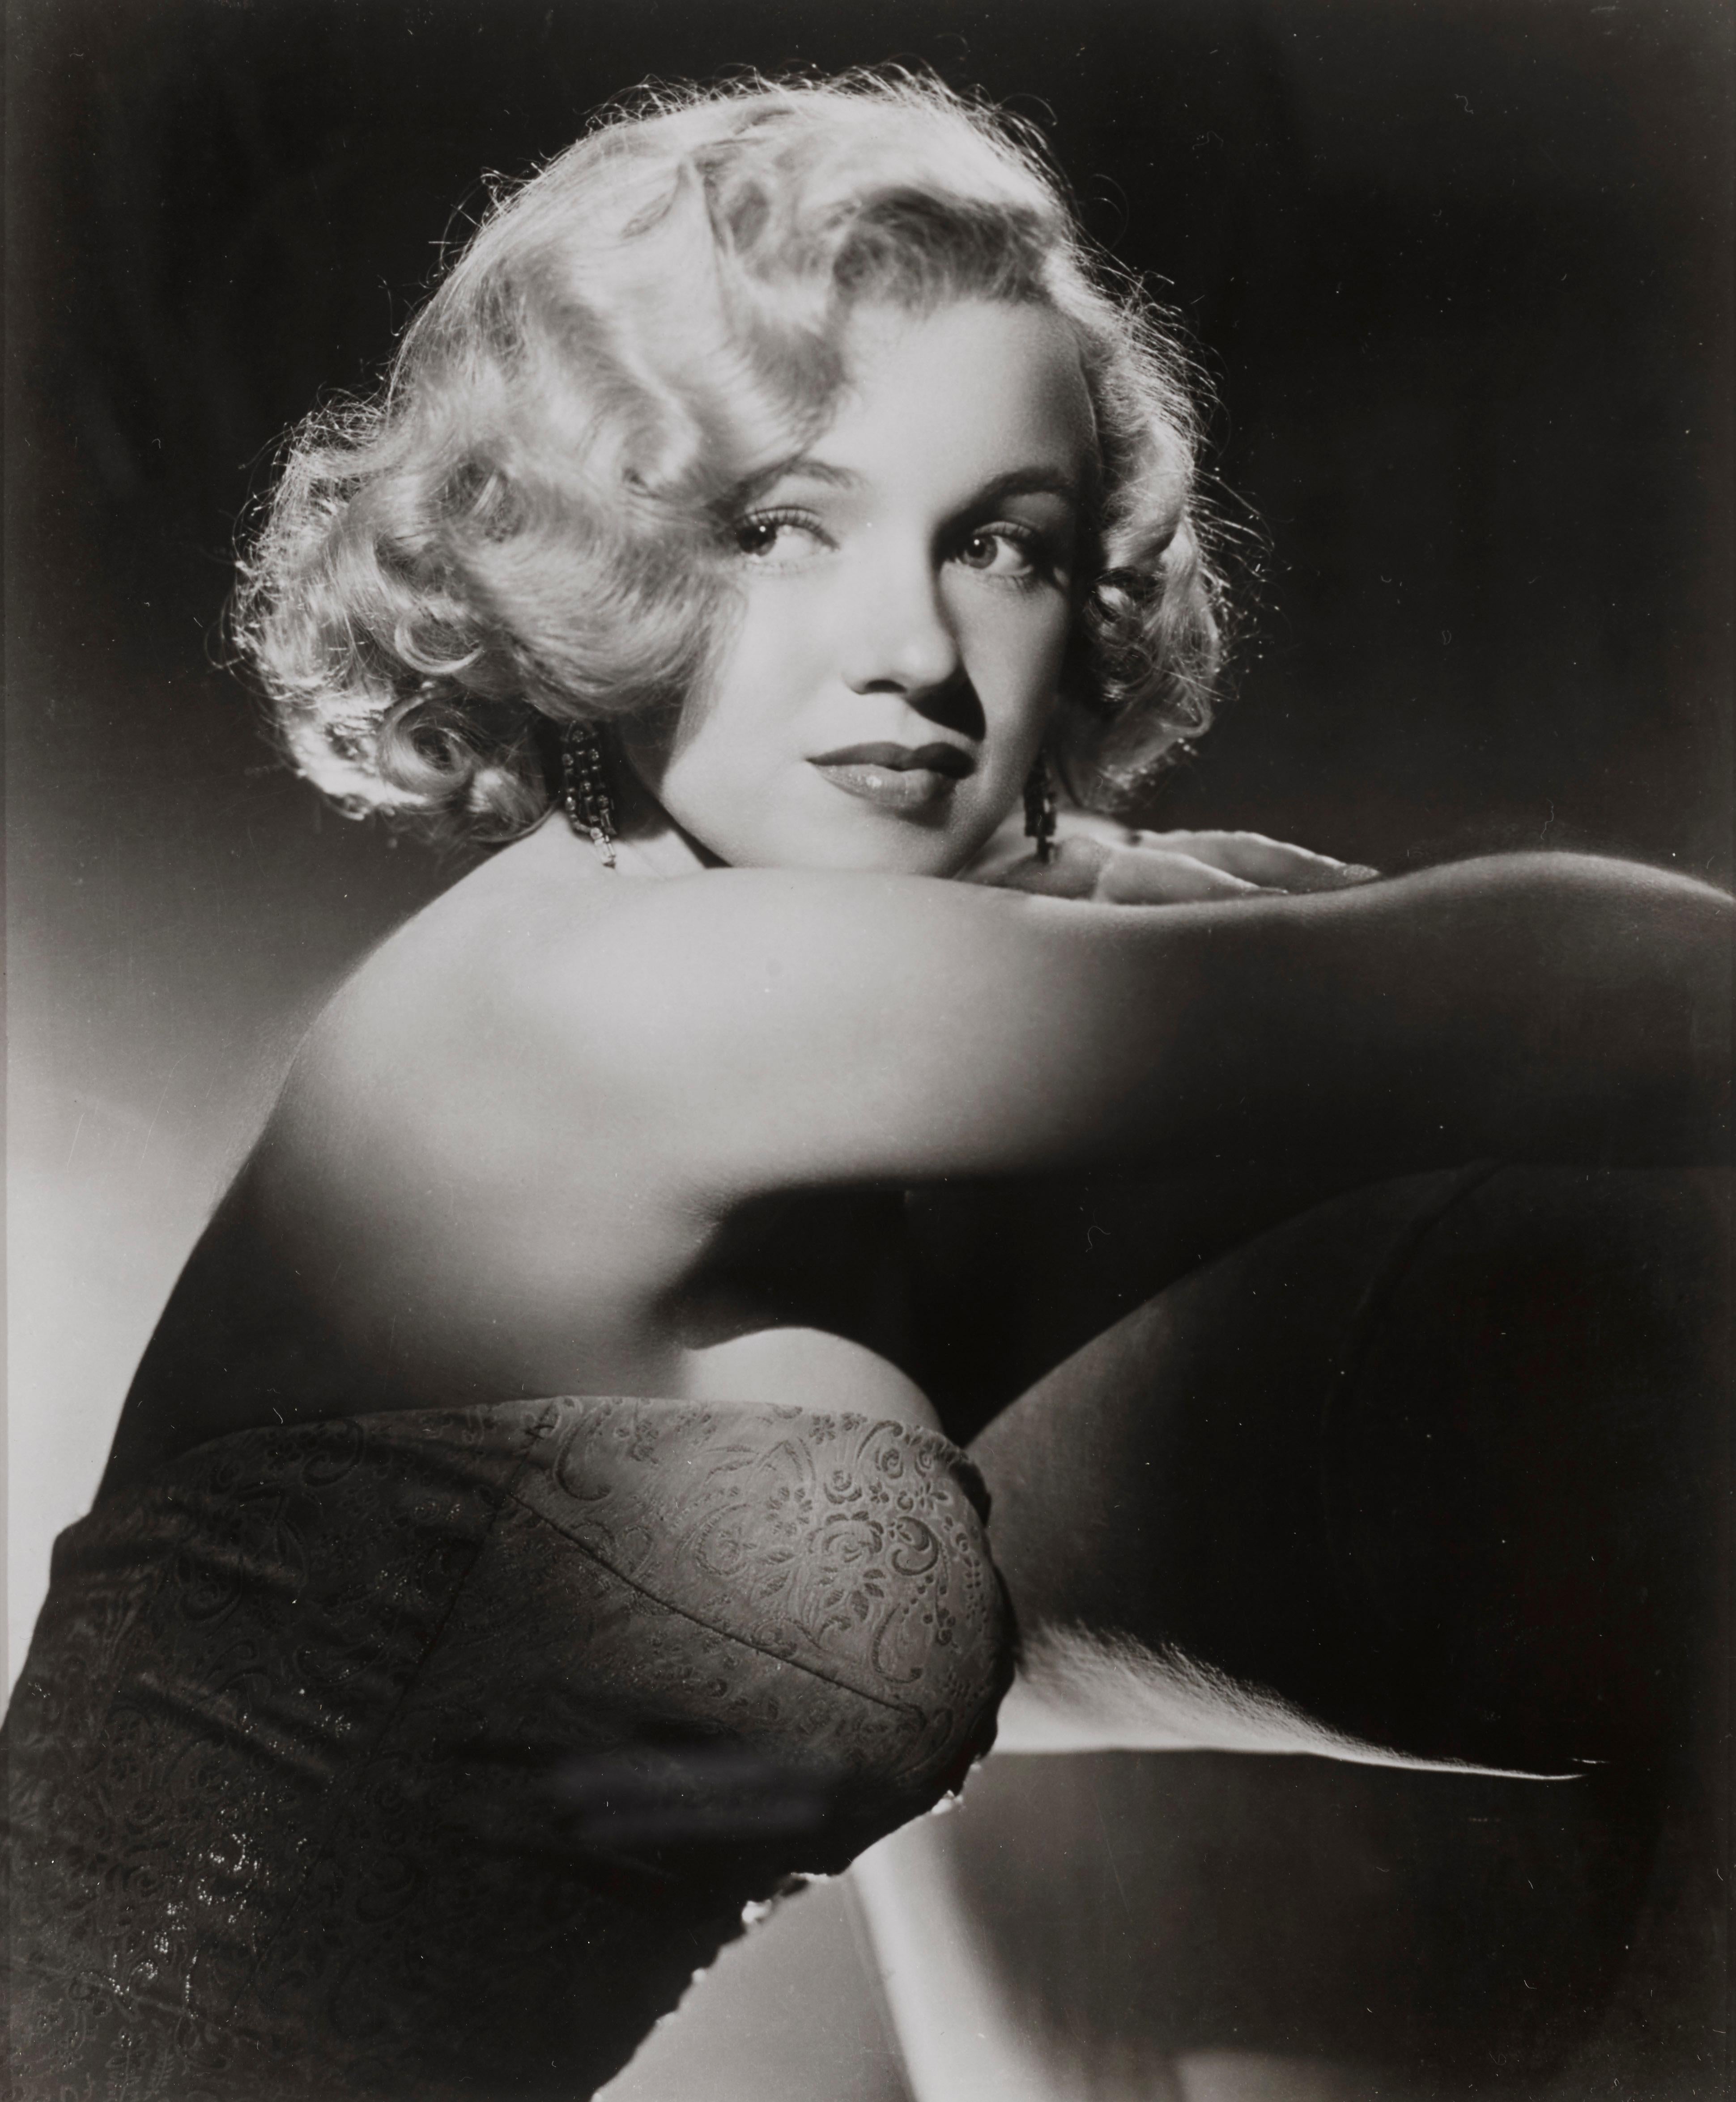 American 'Marilyn Monroe